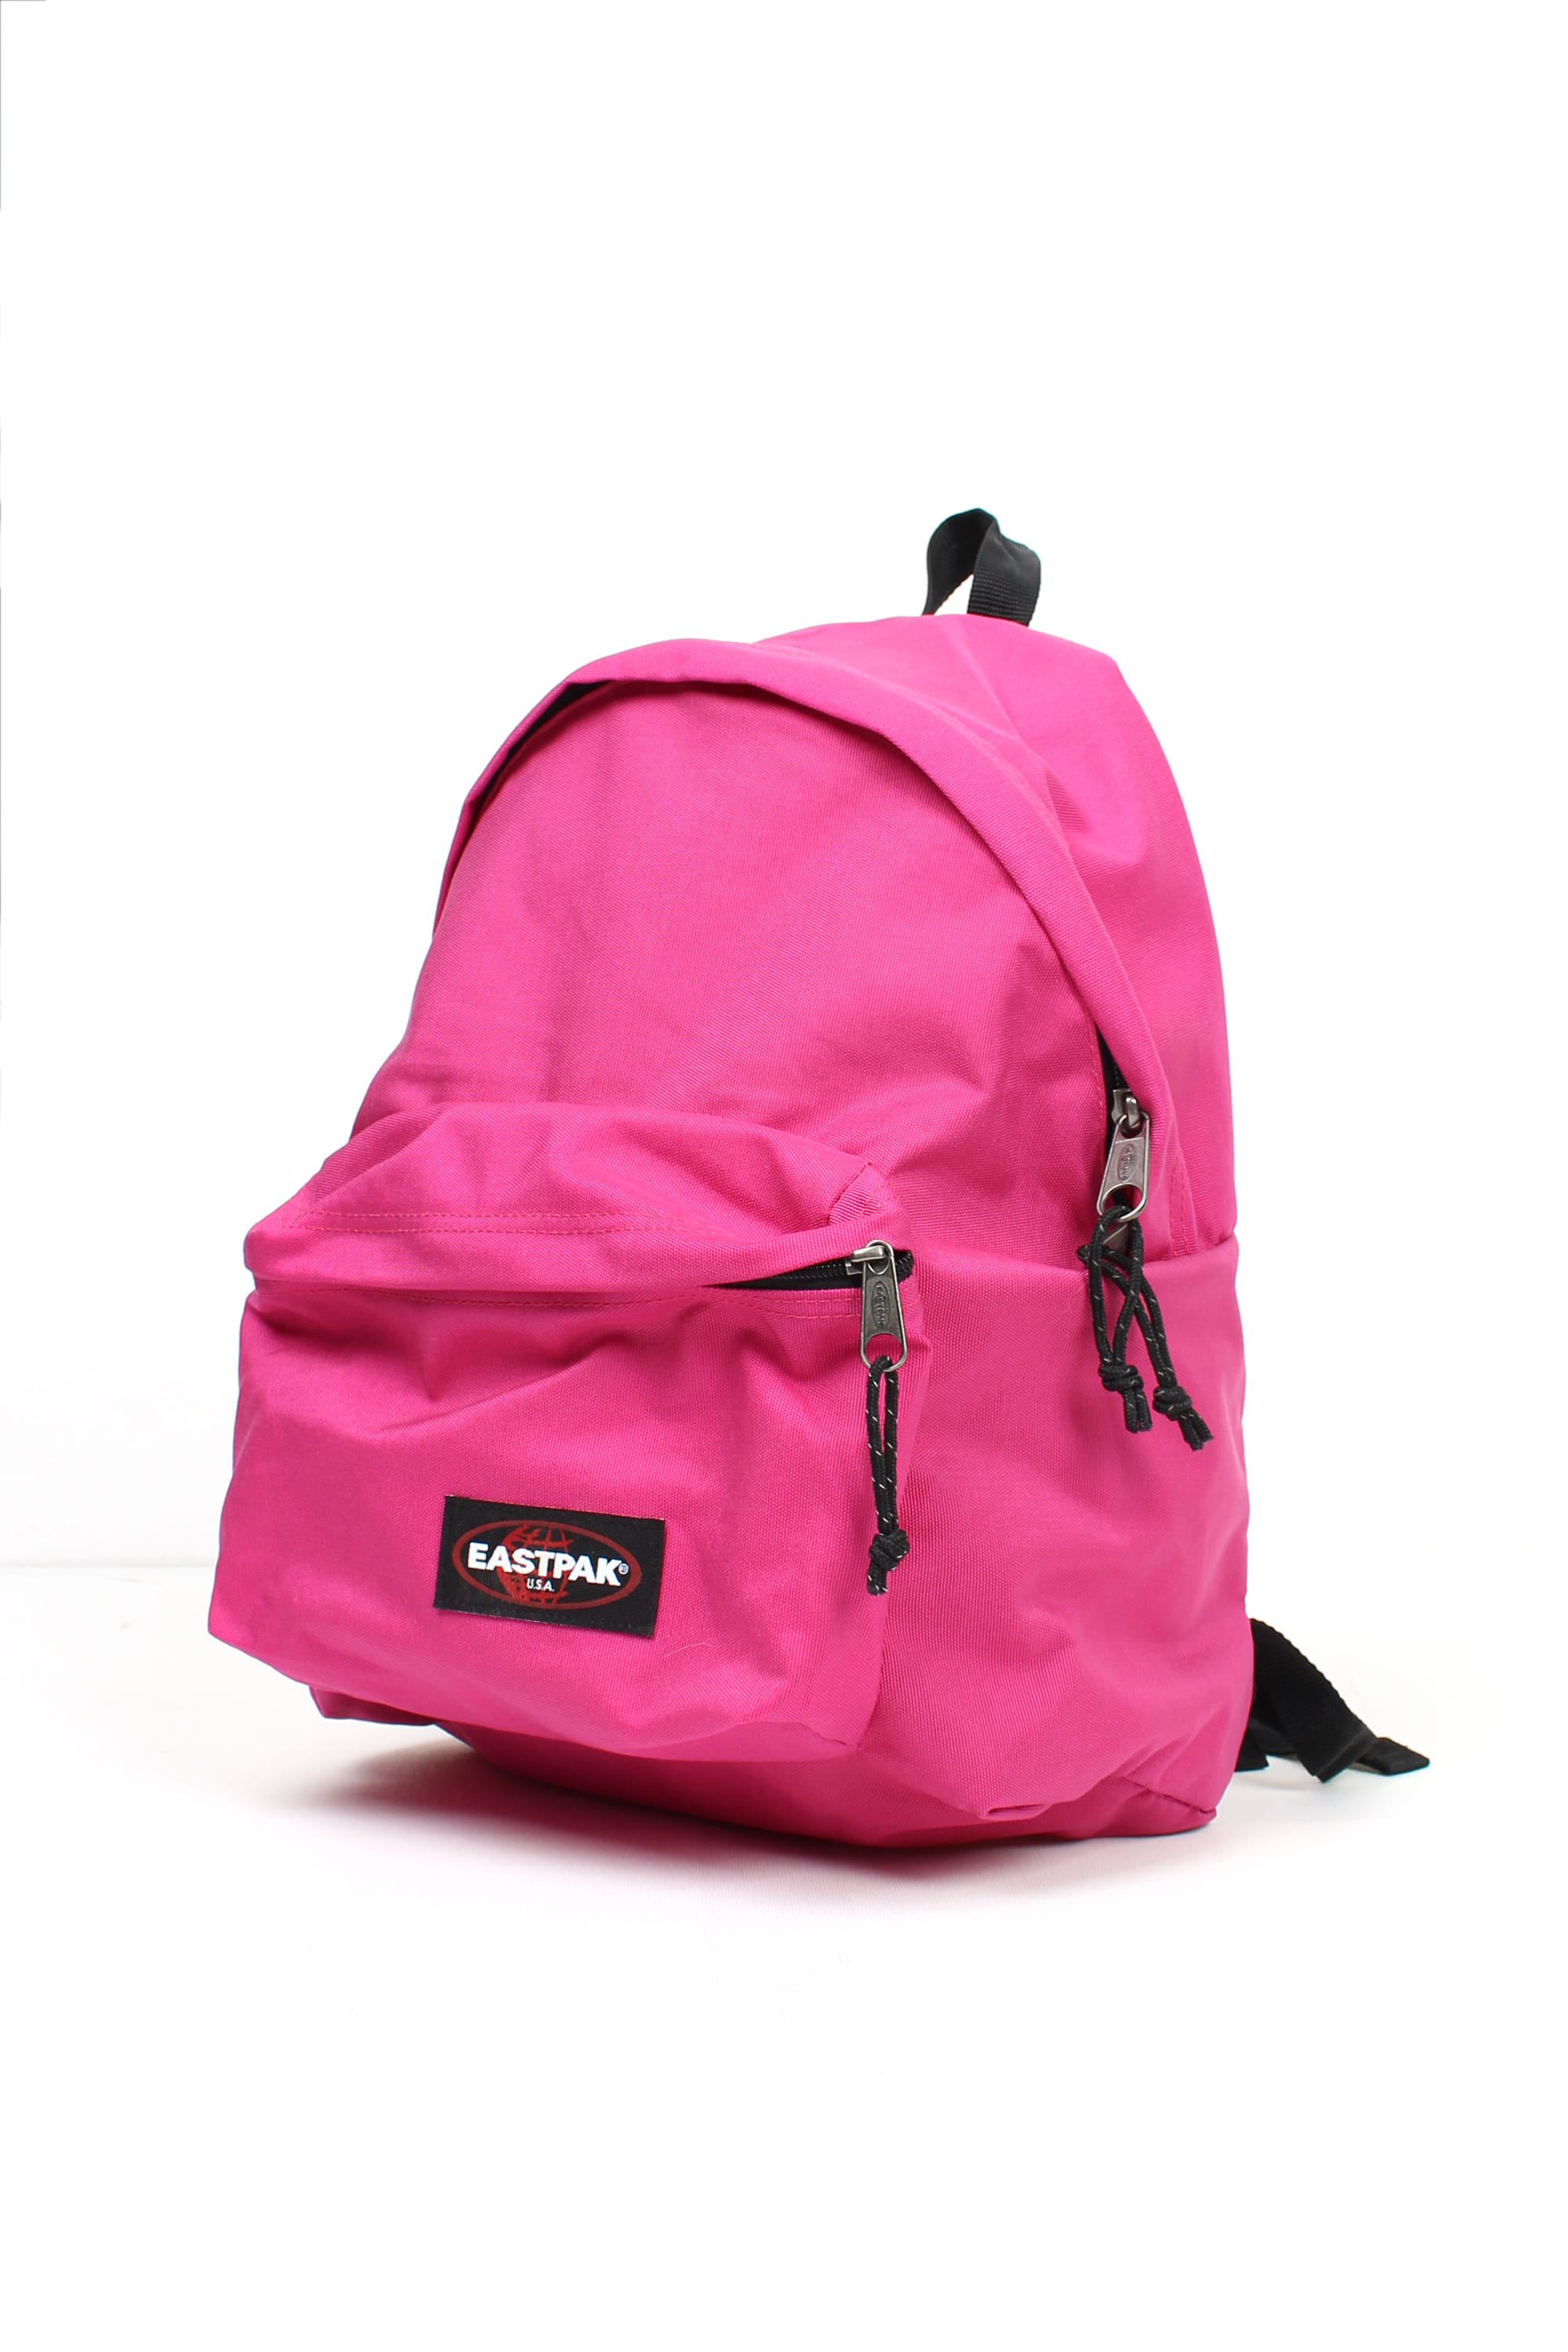 EASTPAK Backpack